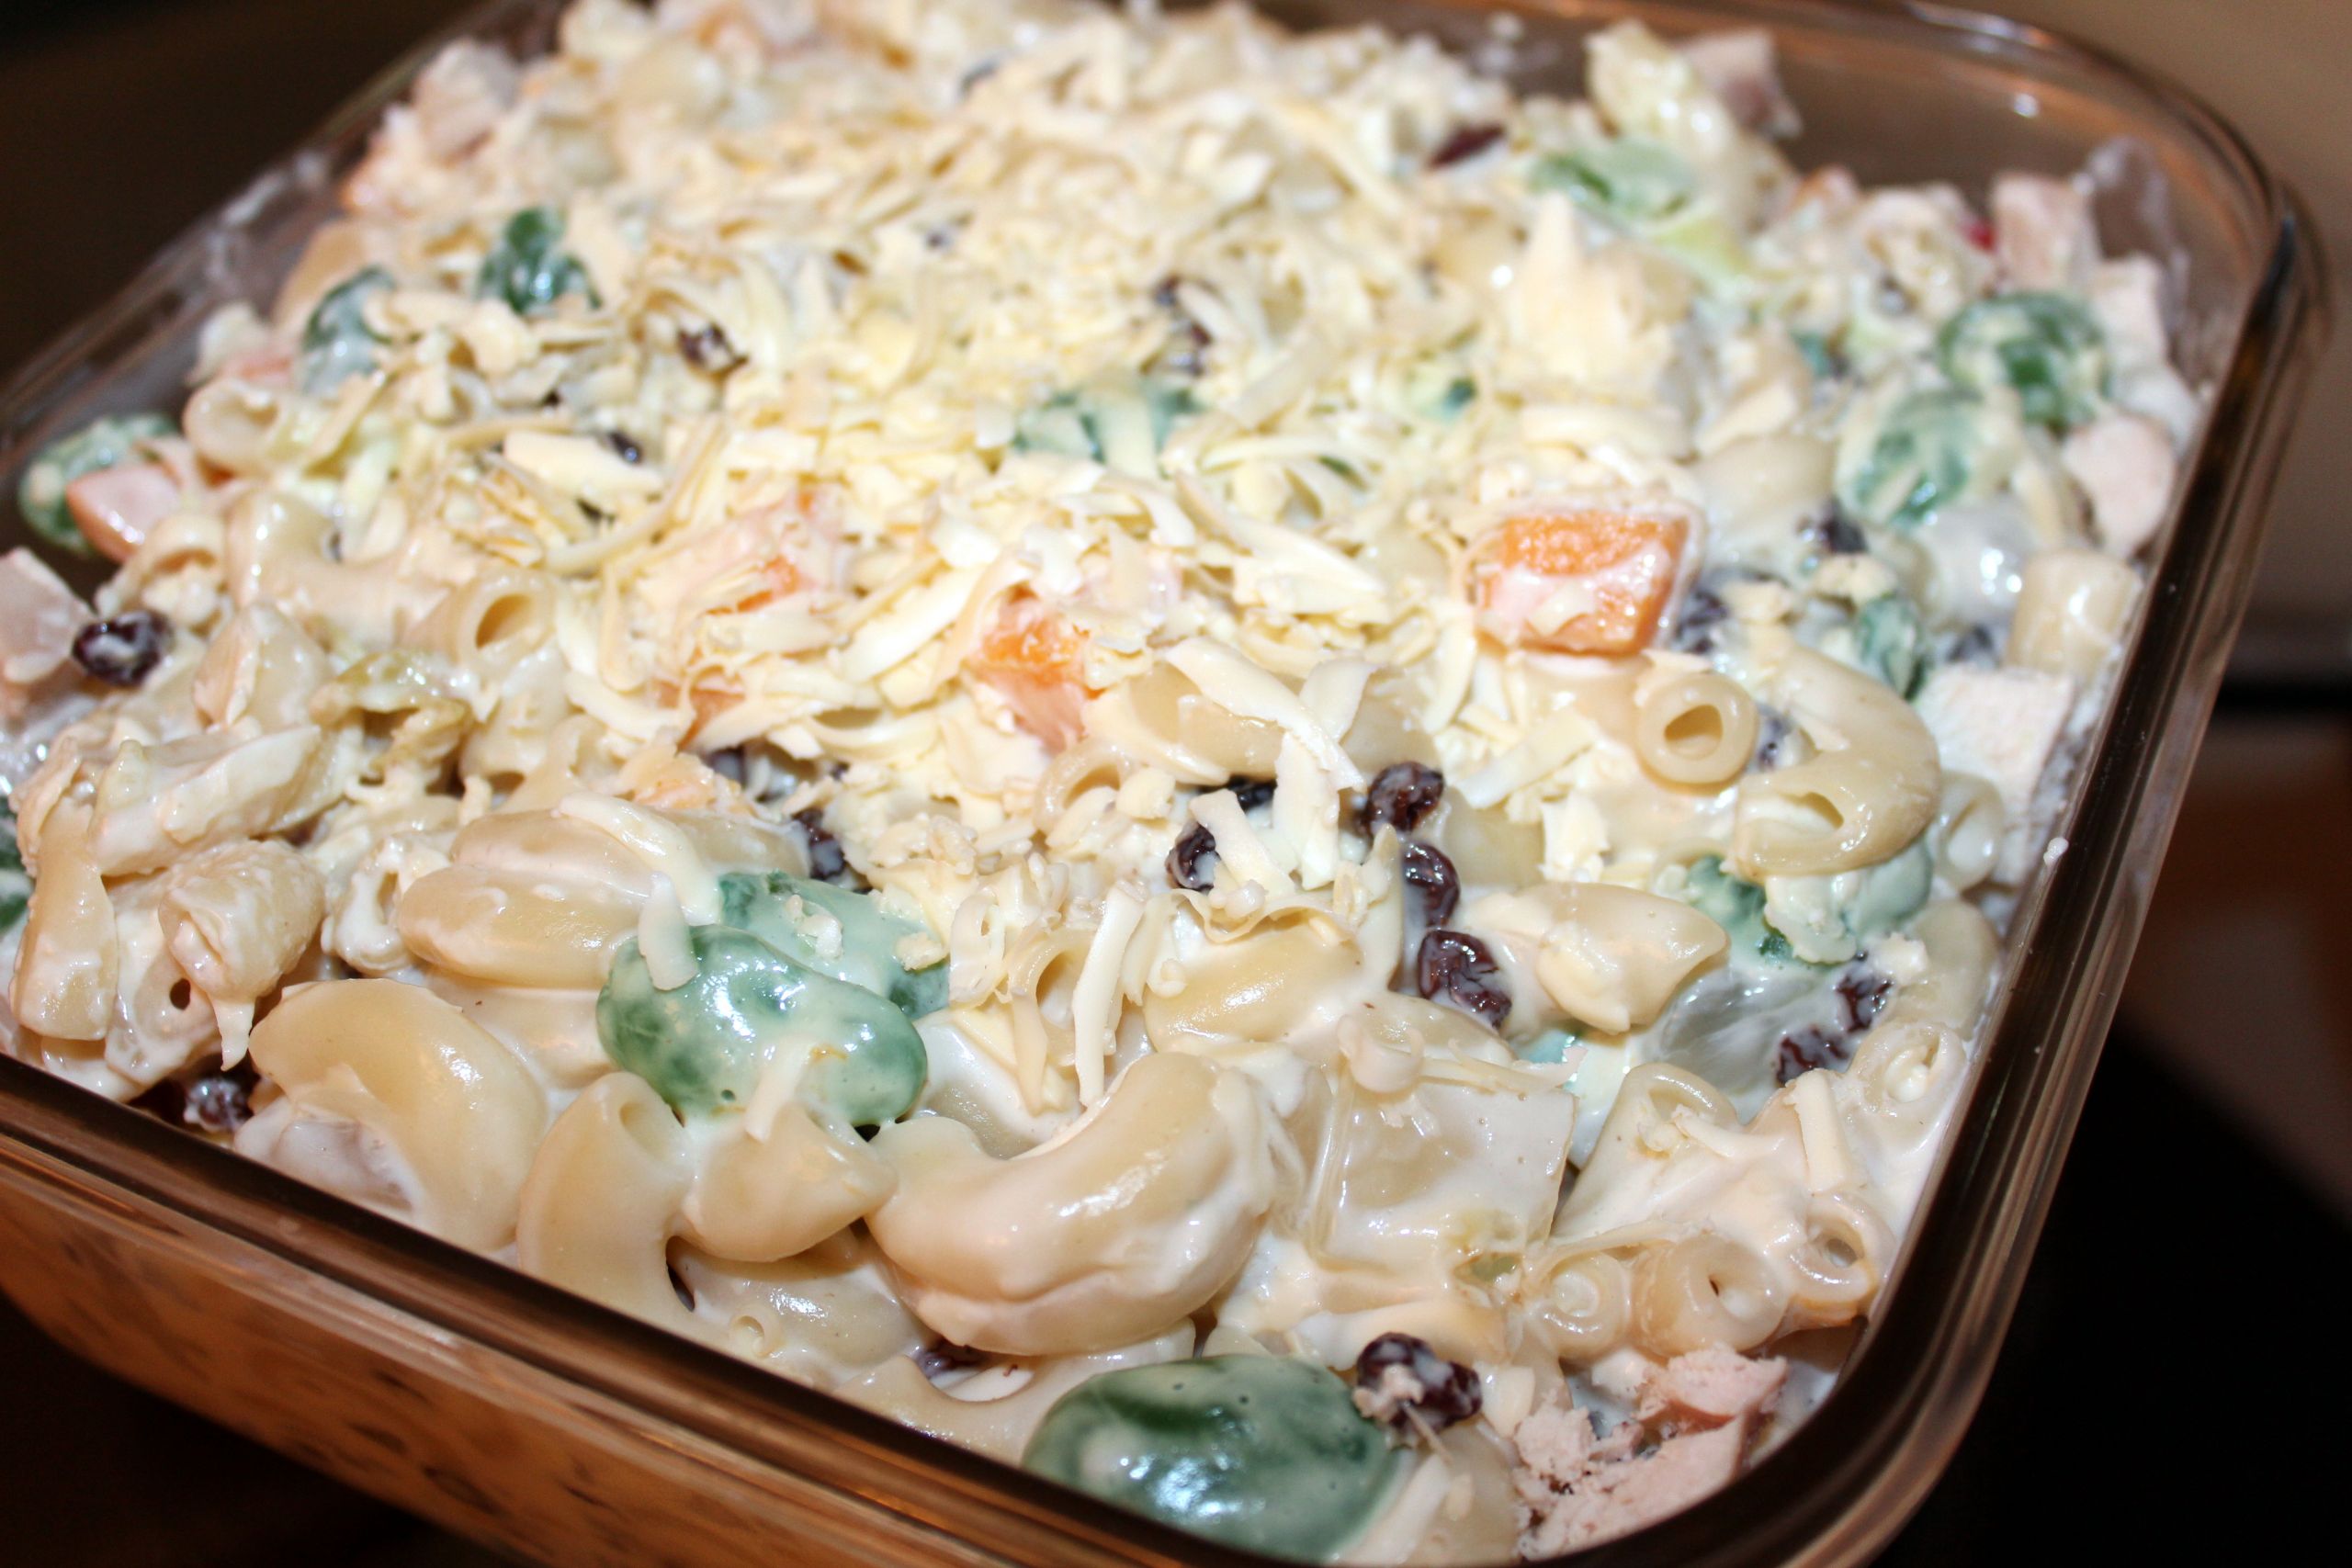 pinoy macaroni salad recipe